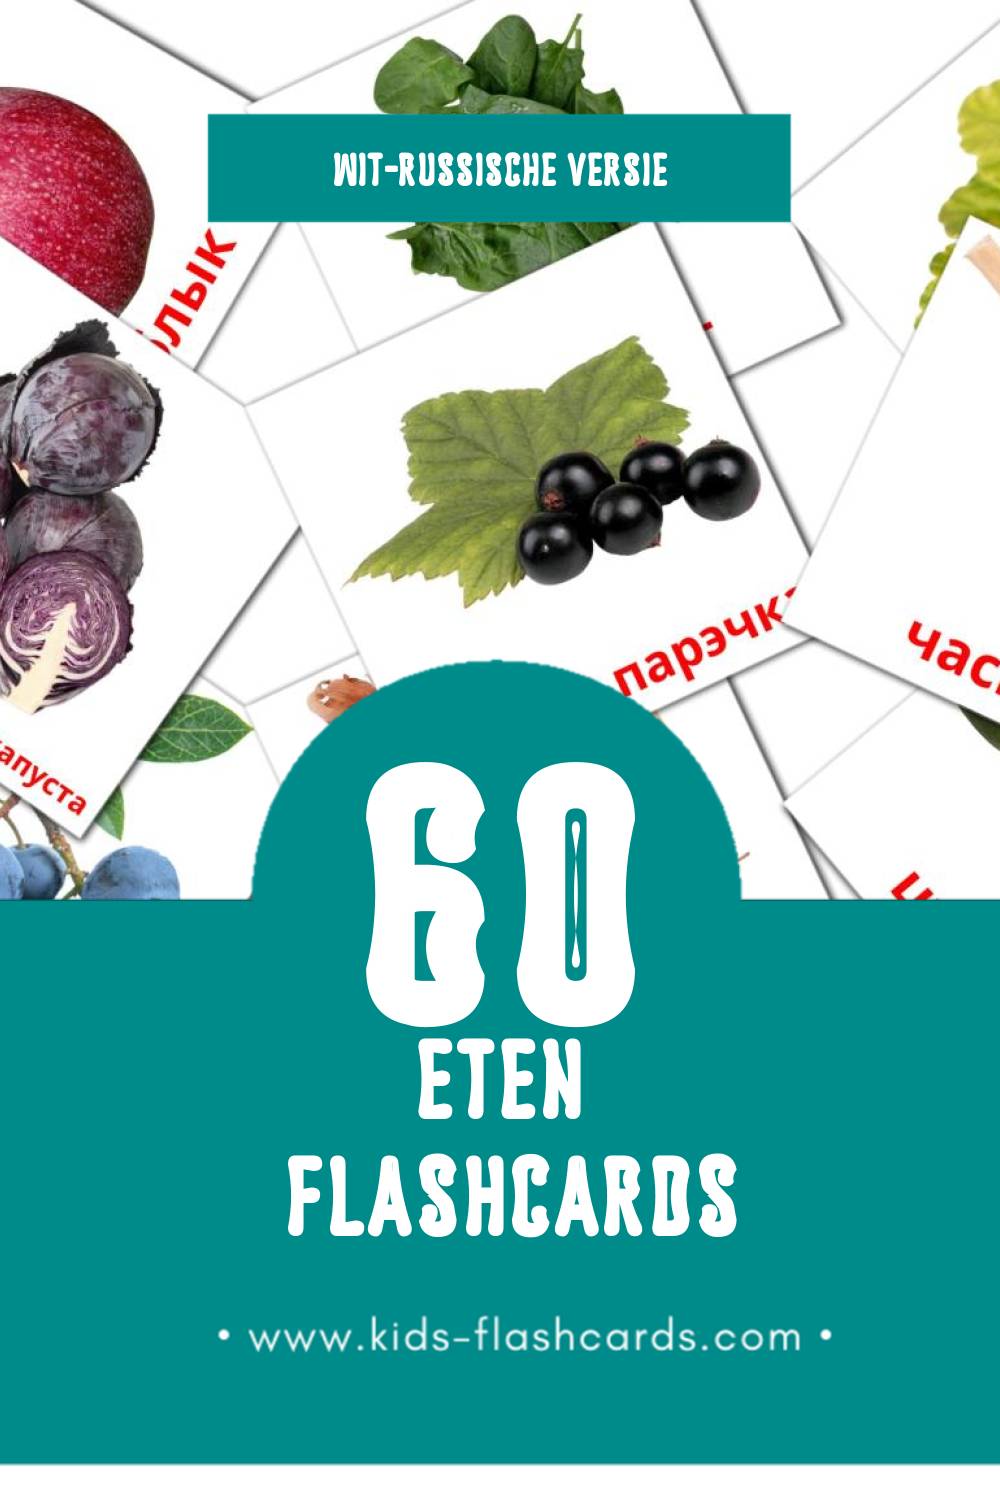 Visuele Ежа Flashcards voor Kleuters (60 kaarten in het Wit-russisch)